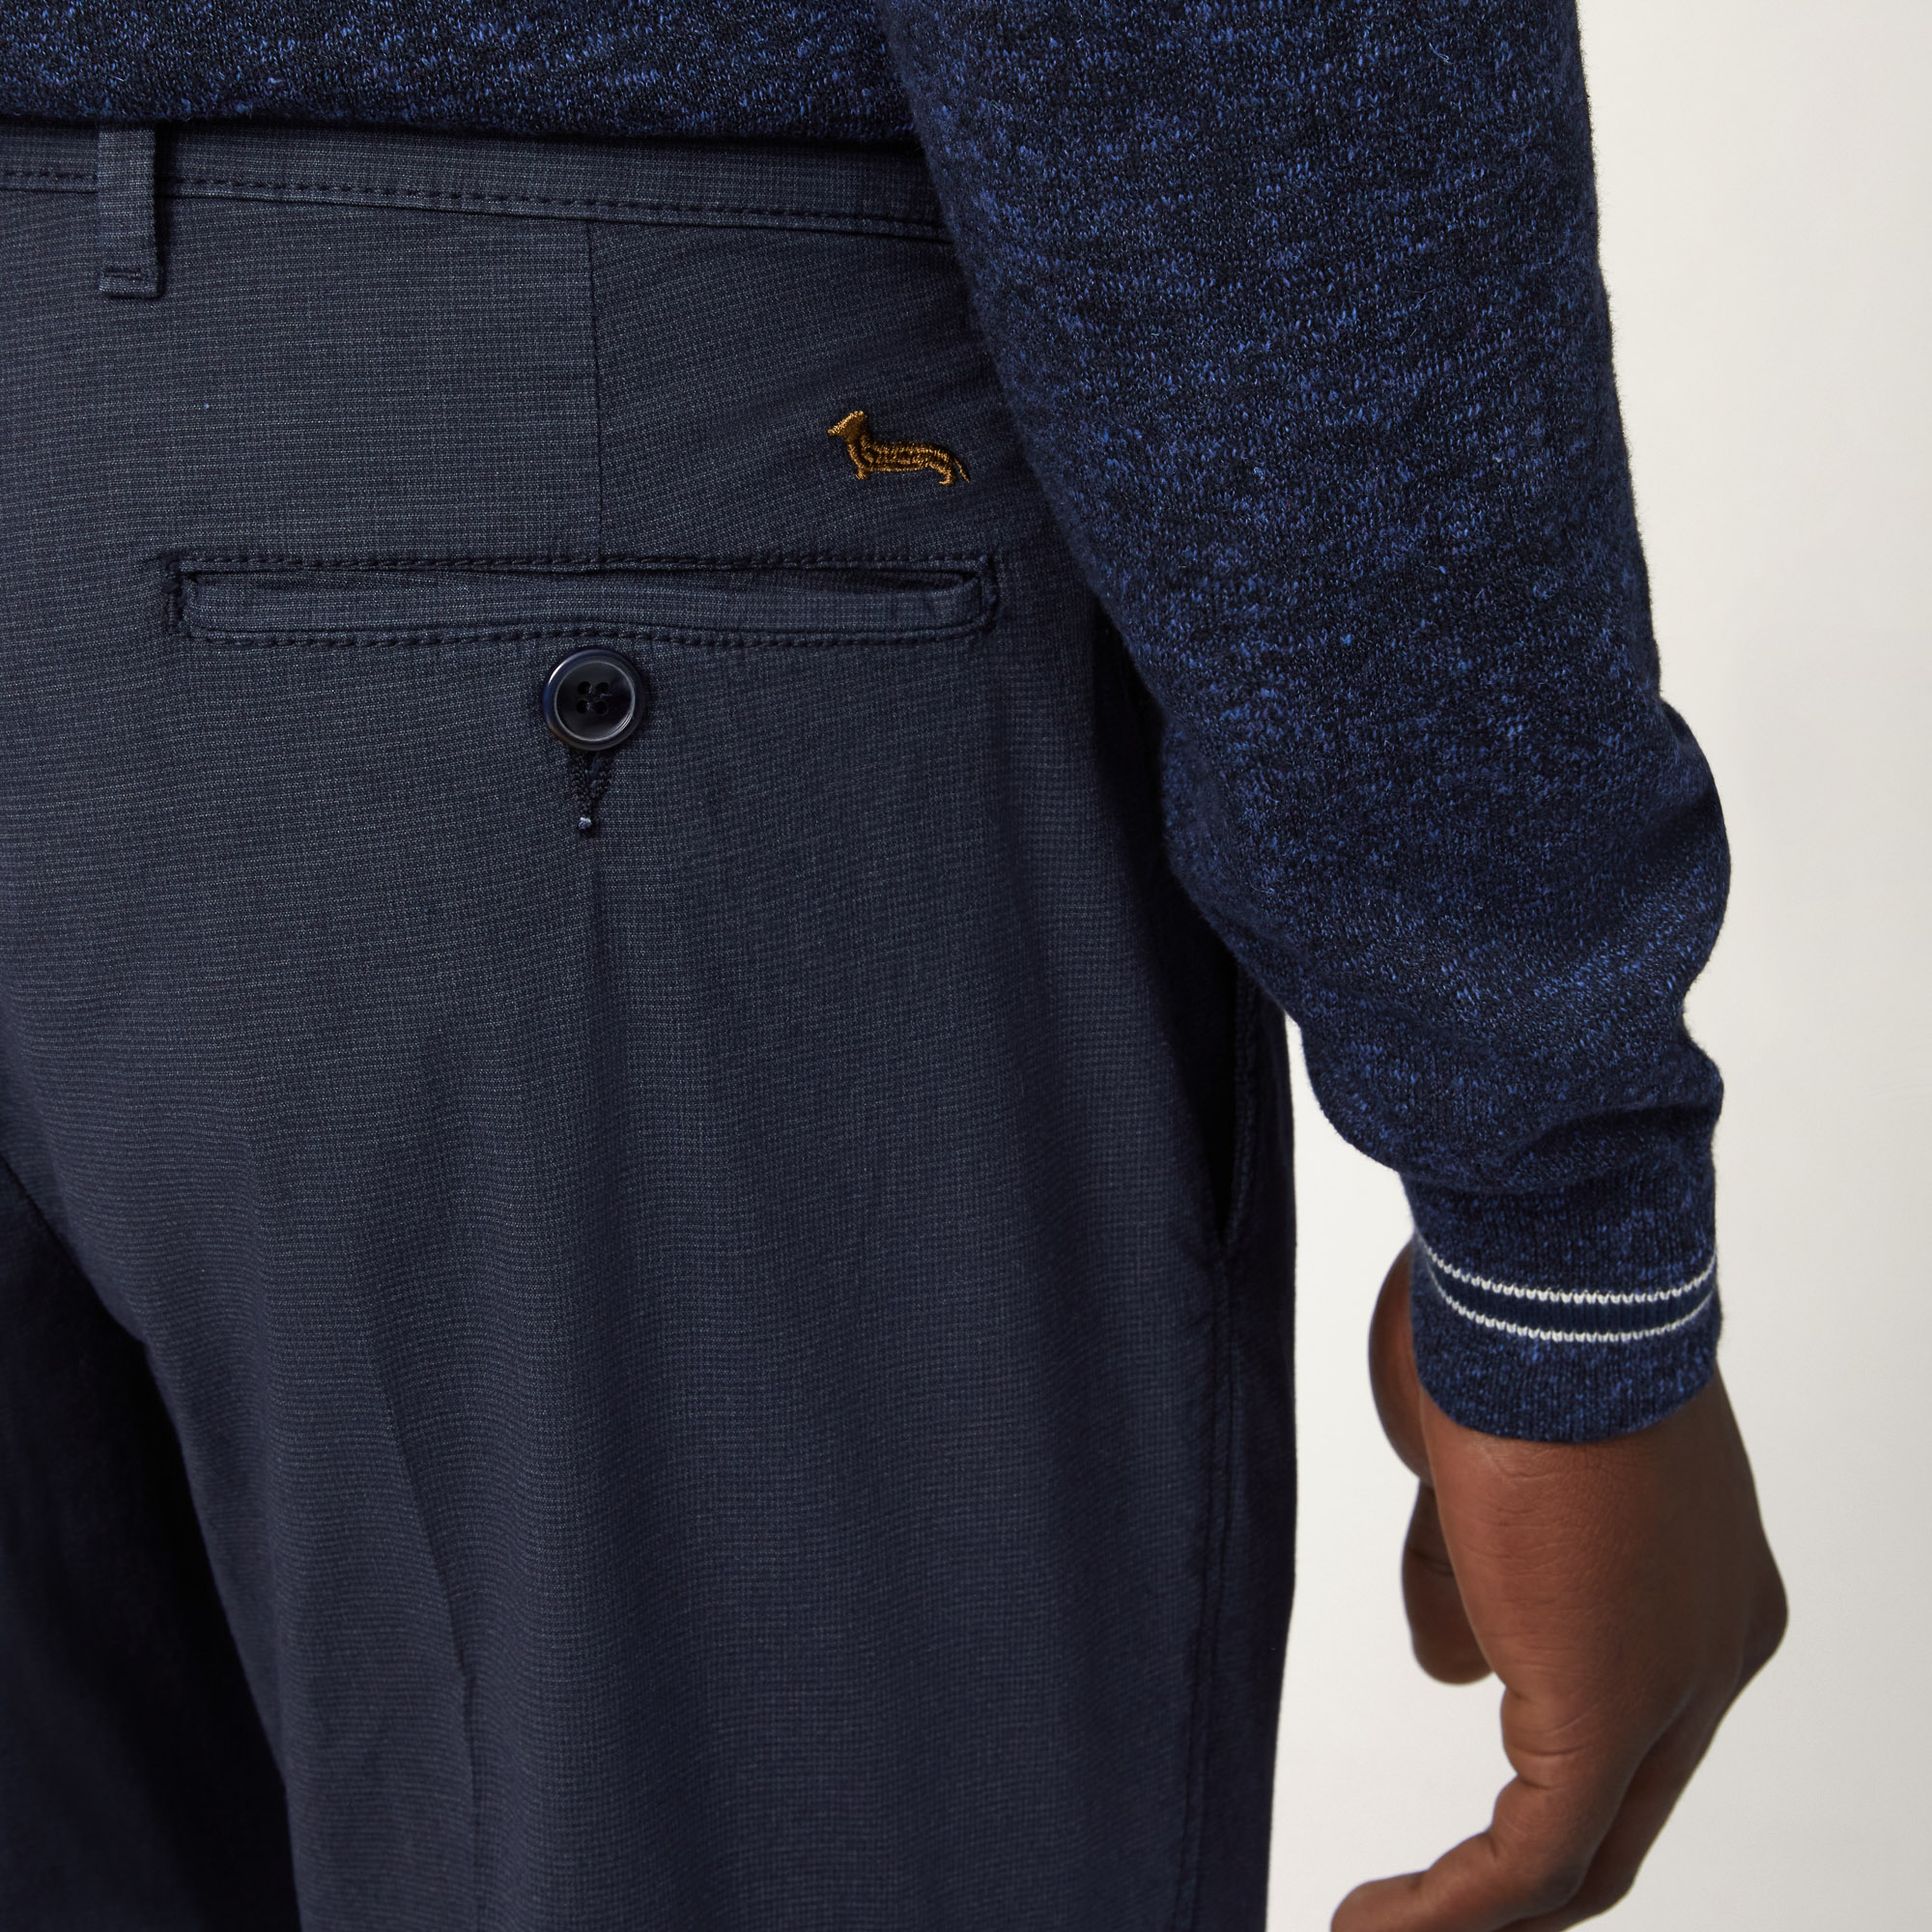 Pantaloni Chino Slim Fit, Blu Navy, large image number 2